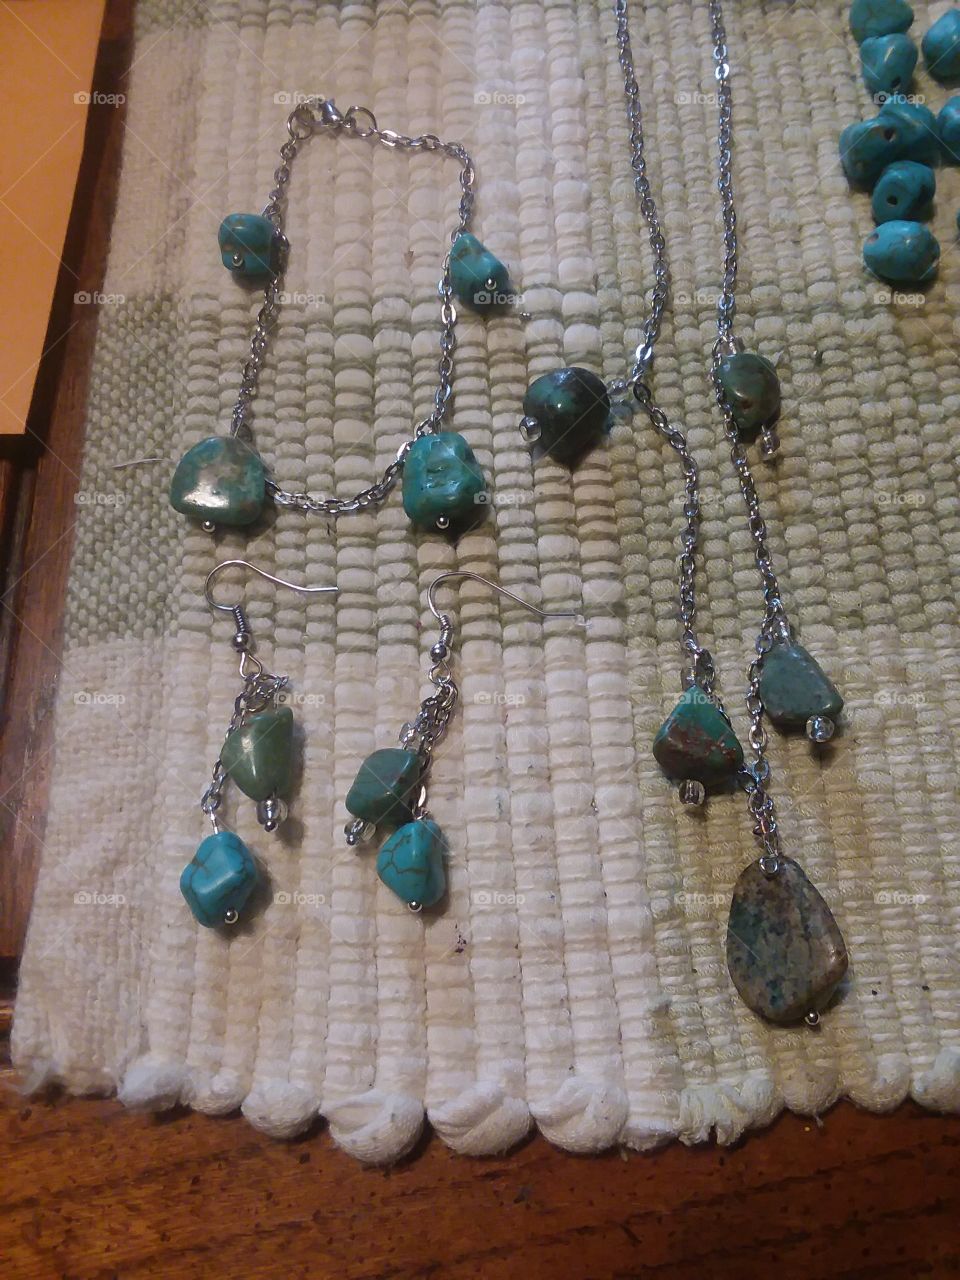 A full set of turquoise jewelry I made. I am slowly improving my skills.